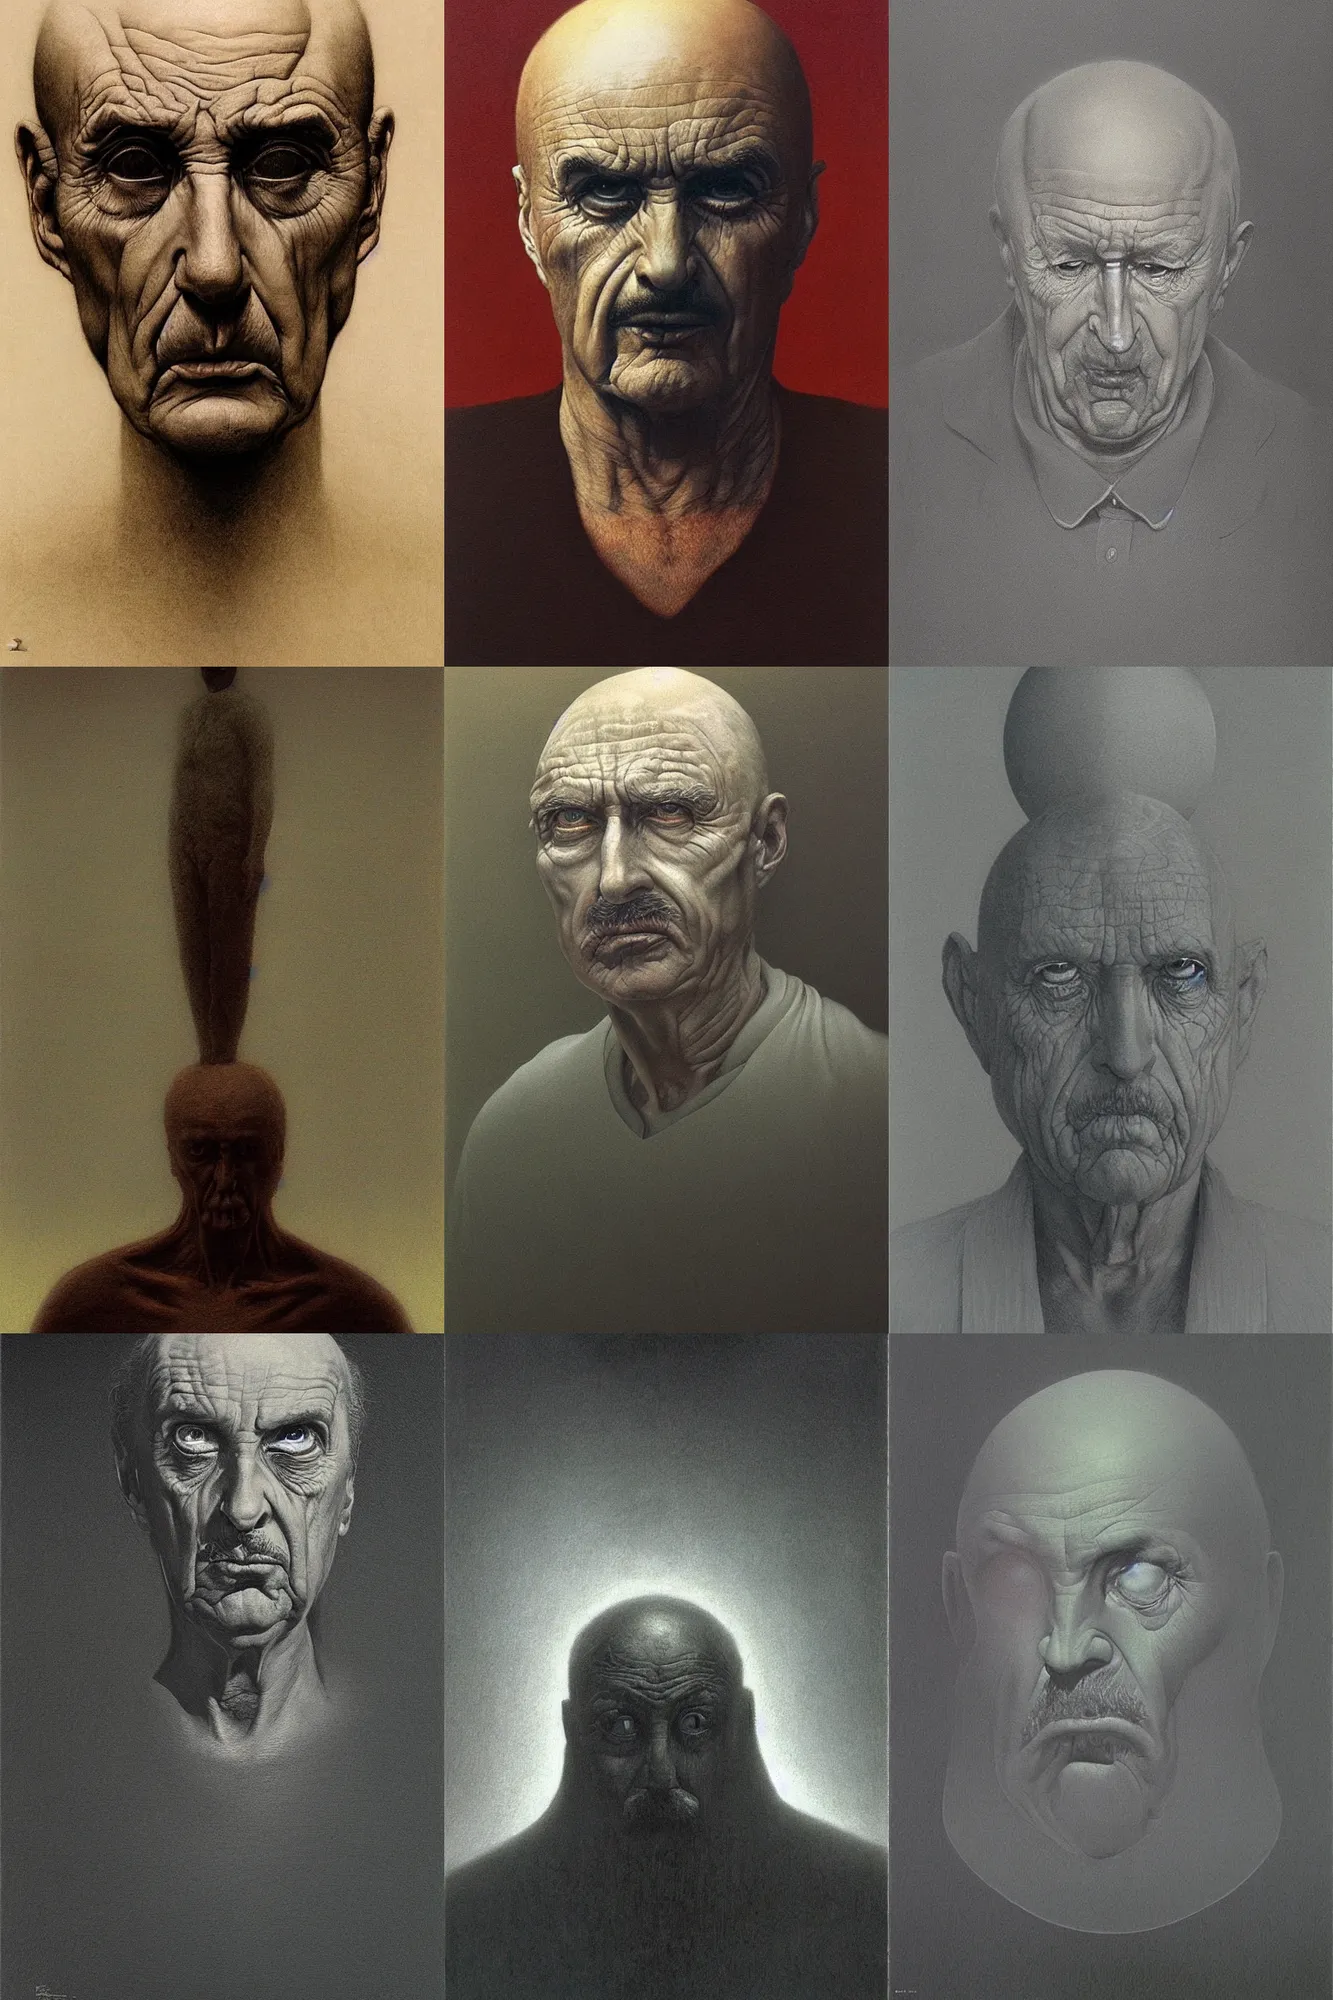 Prompt: detailed, intrincate portrait of Dr. Phil painted by Zdzisław Beksiński, dark, gloomy, creepy